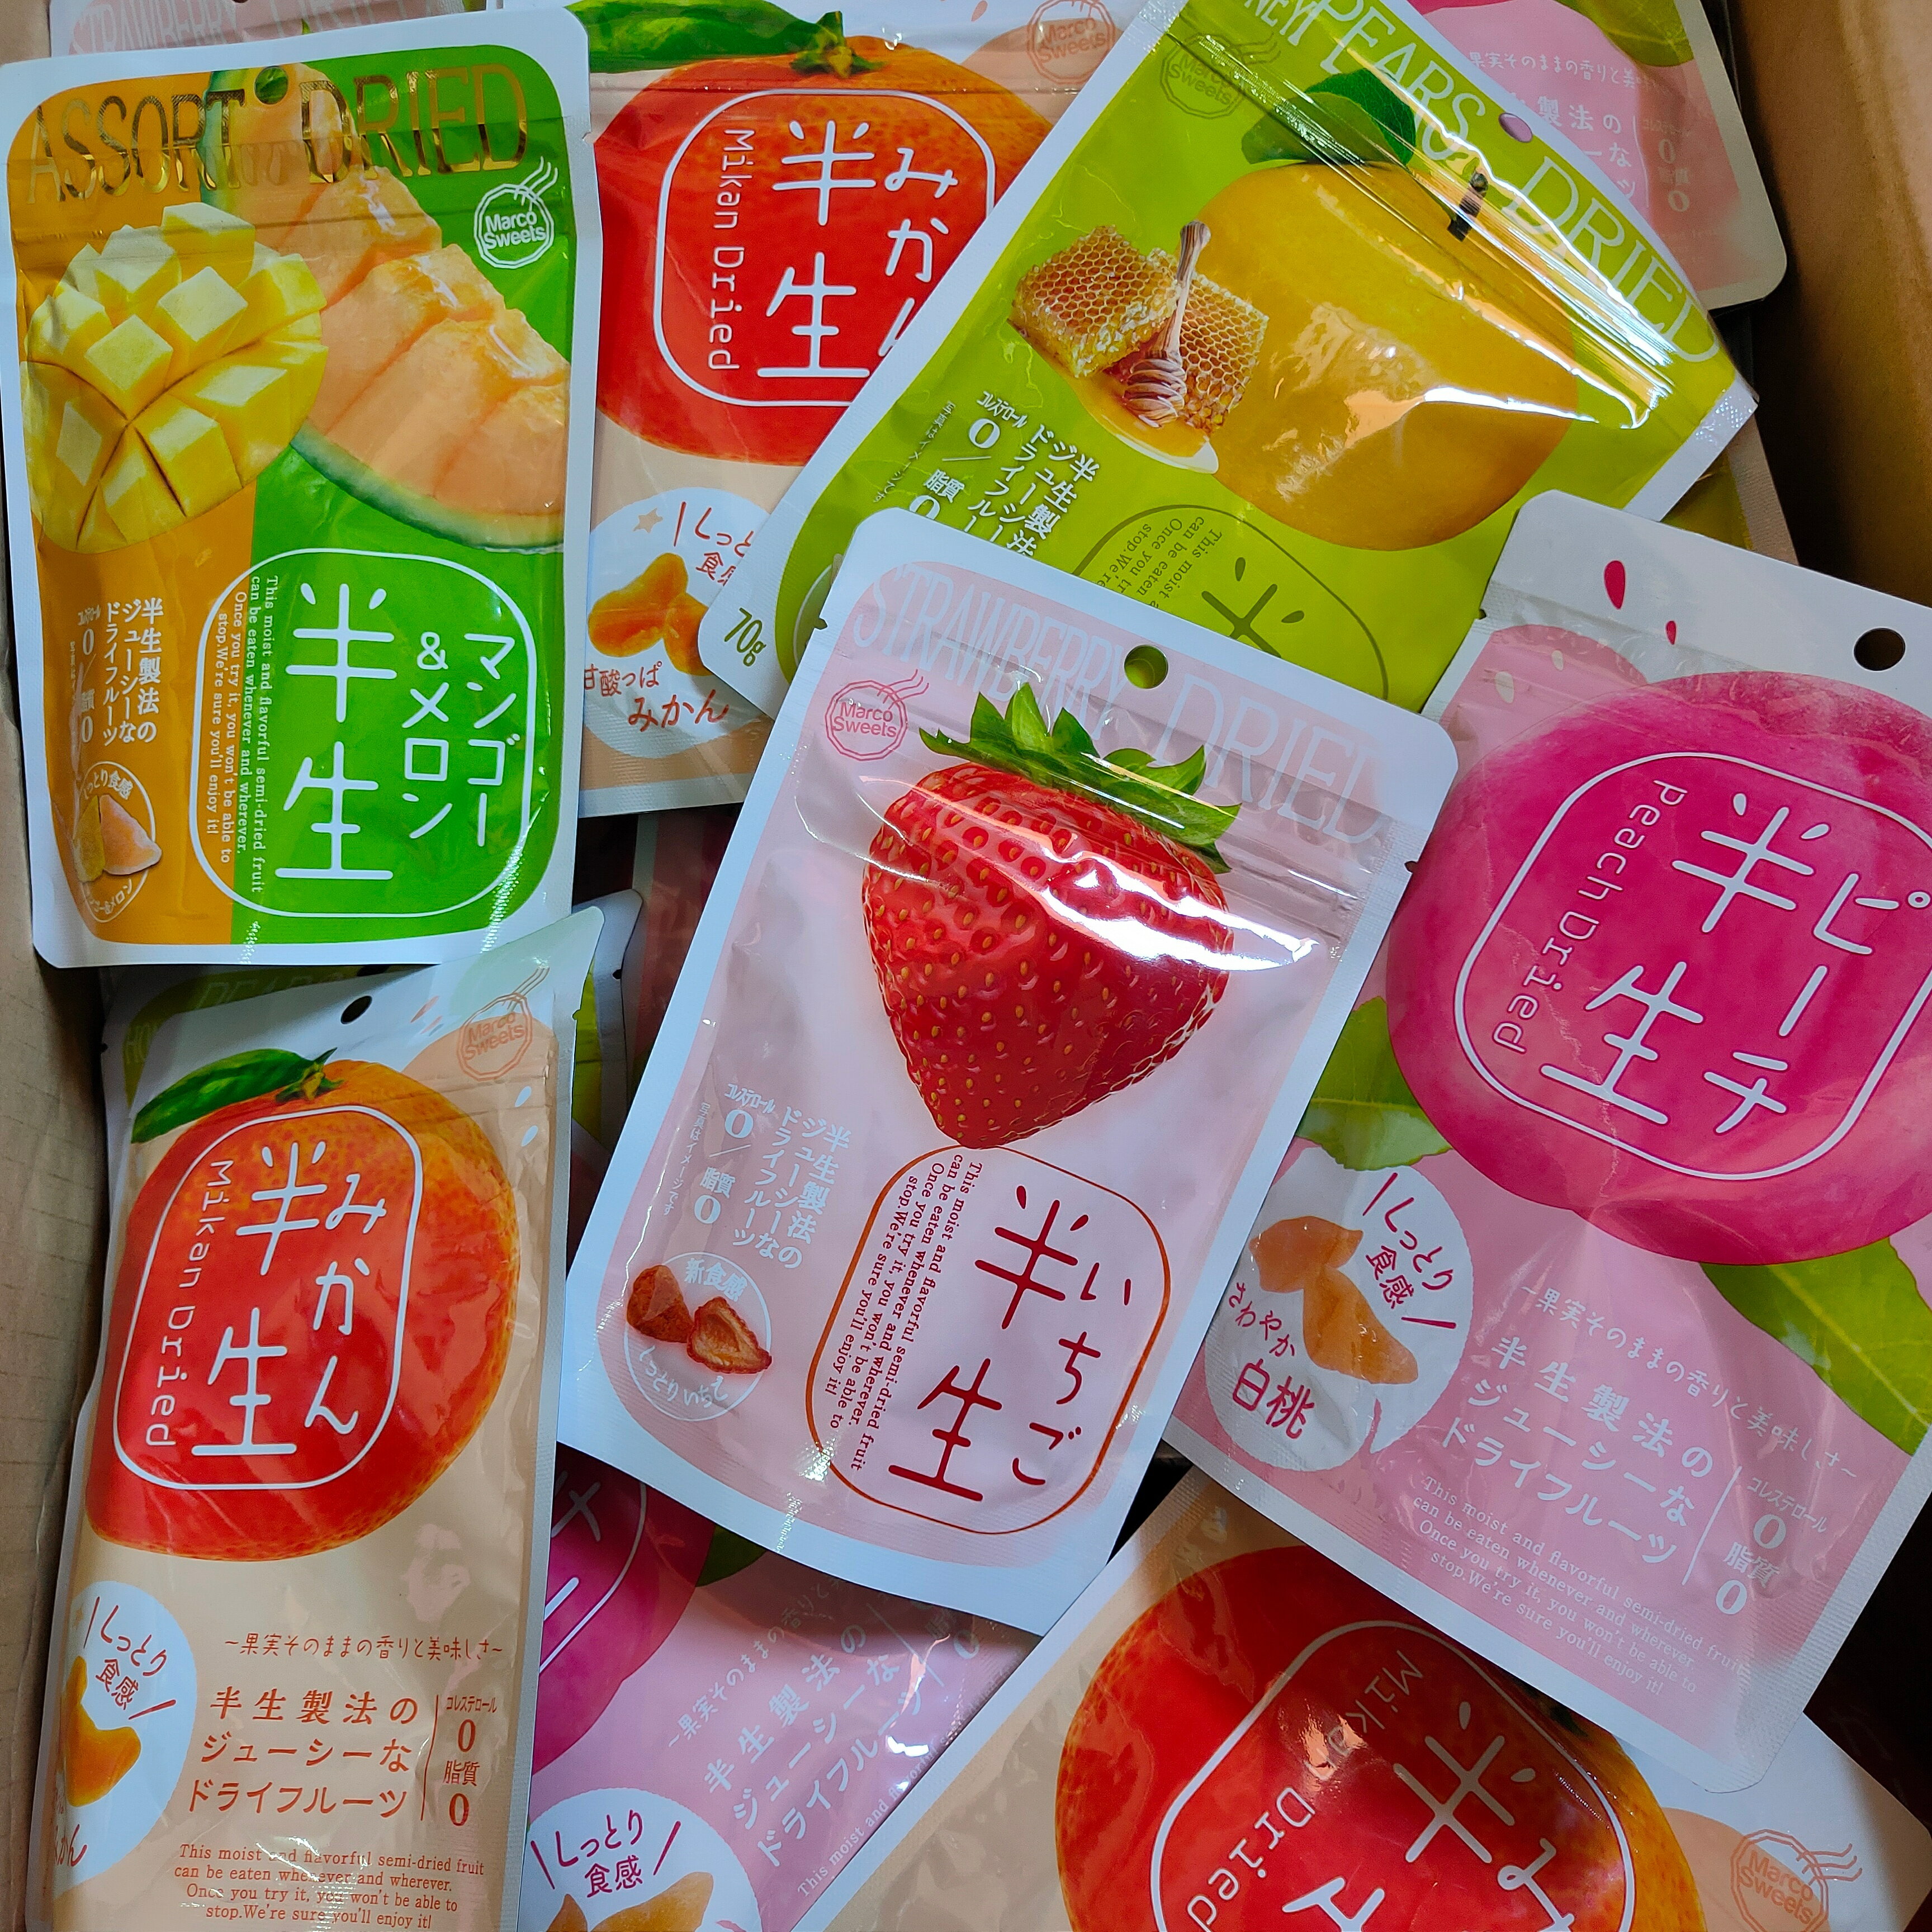 日本 半生果乾 新食感 水果乾 草莓 芒果 水蜜桃 橘子 蜂蜜水梨 果乾 零脂肪 零膽固醇 零嘴 零食 好吃